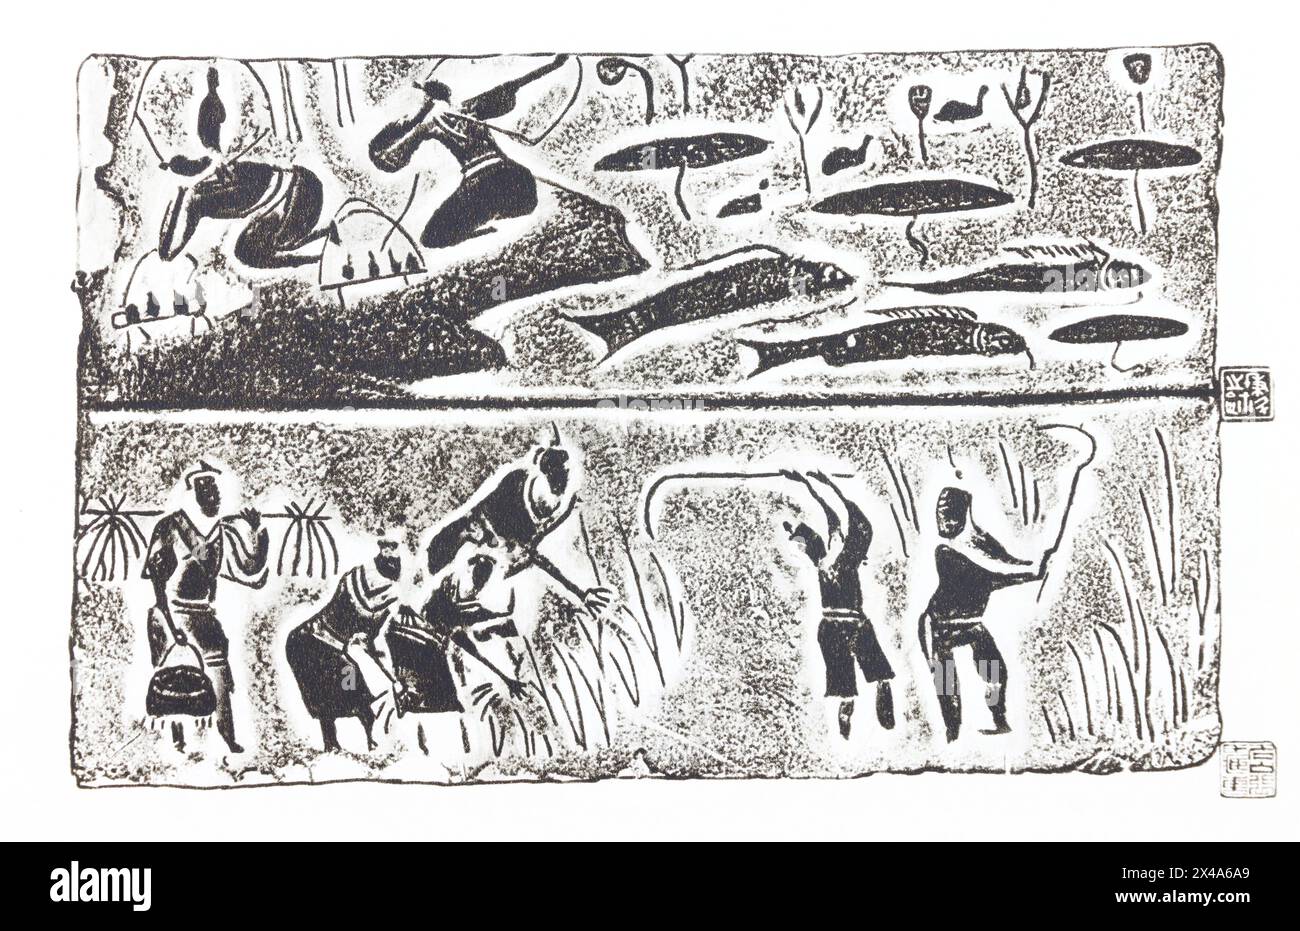 Szenen der Jagd und Ernte. Relief auf Ziegelsteinen aus Han-Gräbern in Sichuan - 1. Jahrhundert v. Chr. - 1. Jahrhundert n. Chr. Fotografie der ersten Hälfte des 20. Jahrhunderts. Stockfoto